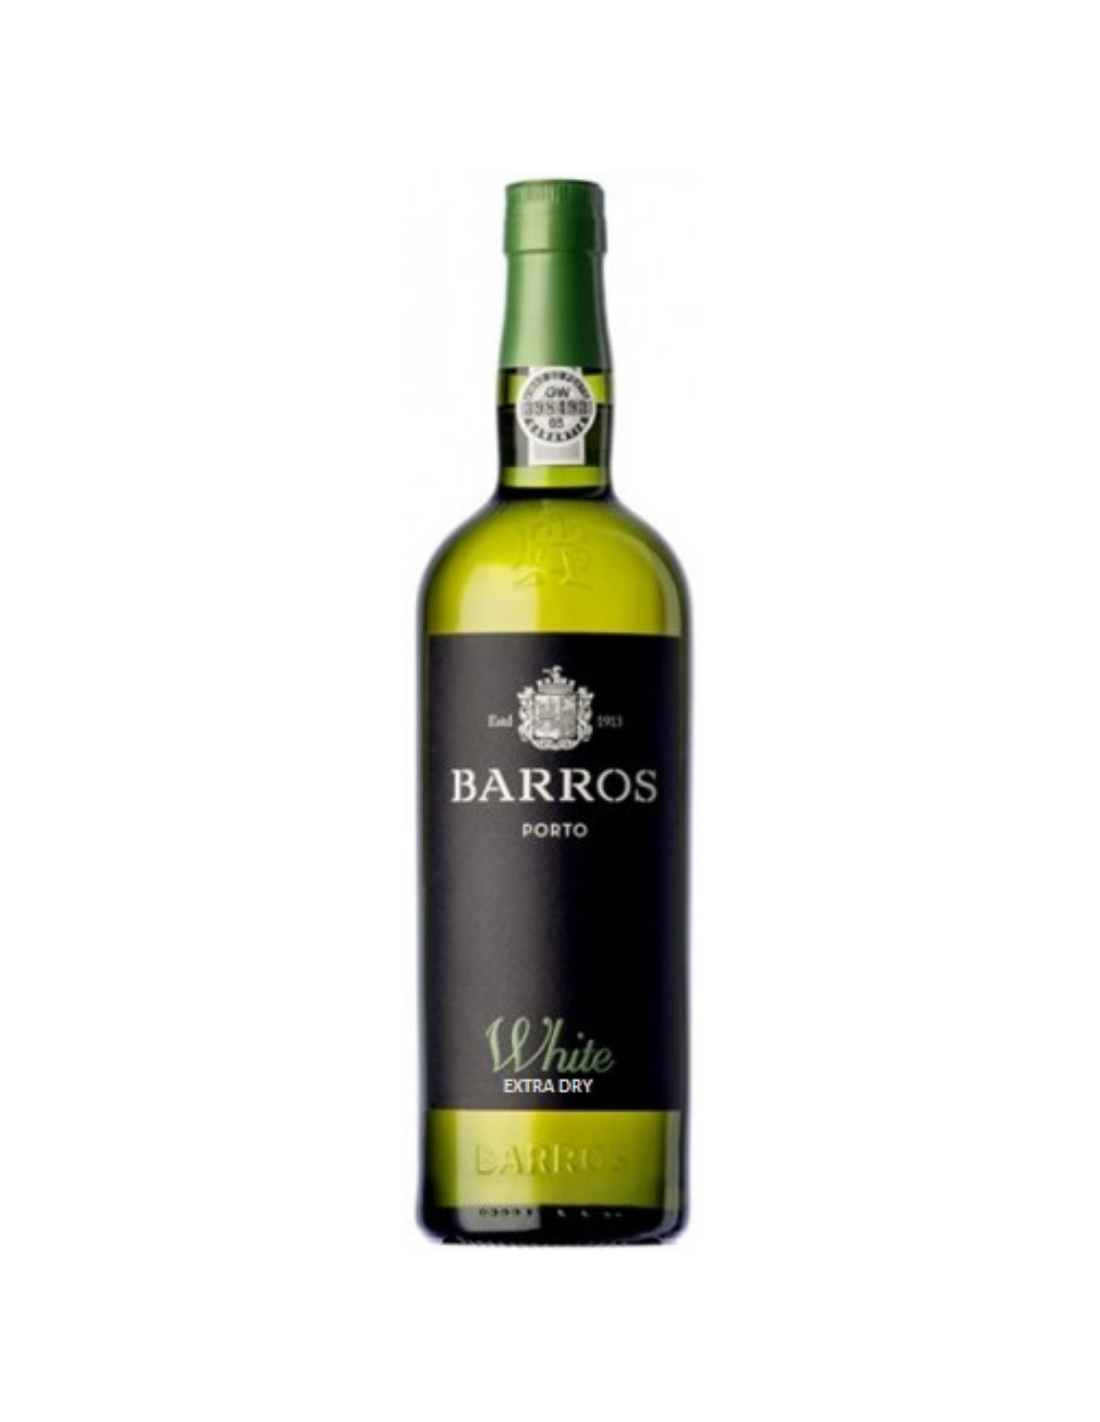 Vin porto alb sec Barros White Extra Dry, 0.75L, 20% alc., Portugalia alcooldiscount.ro